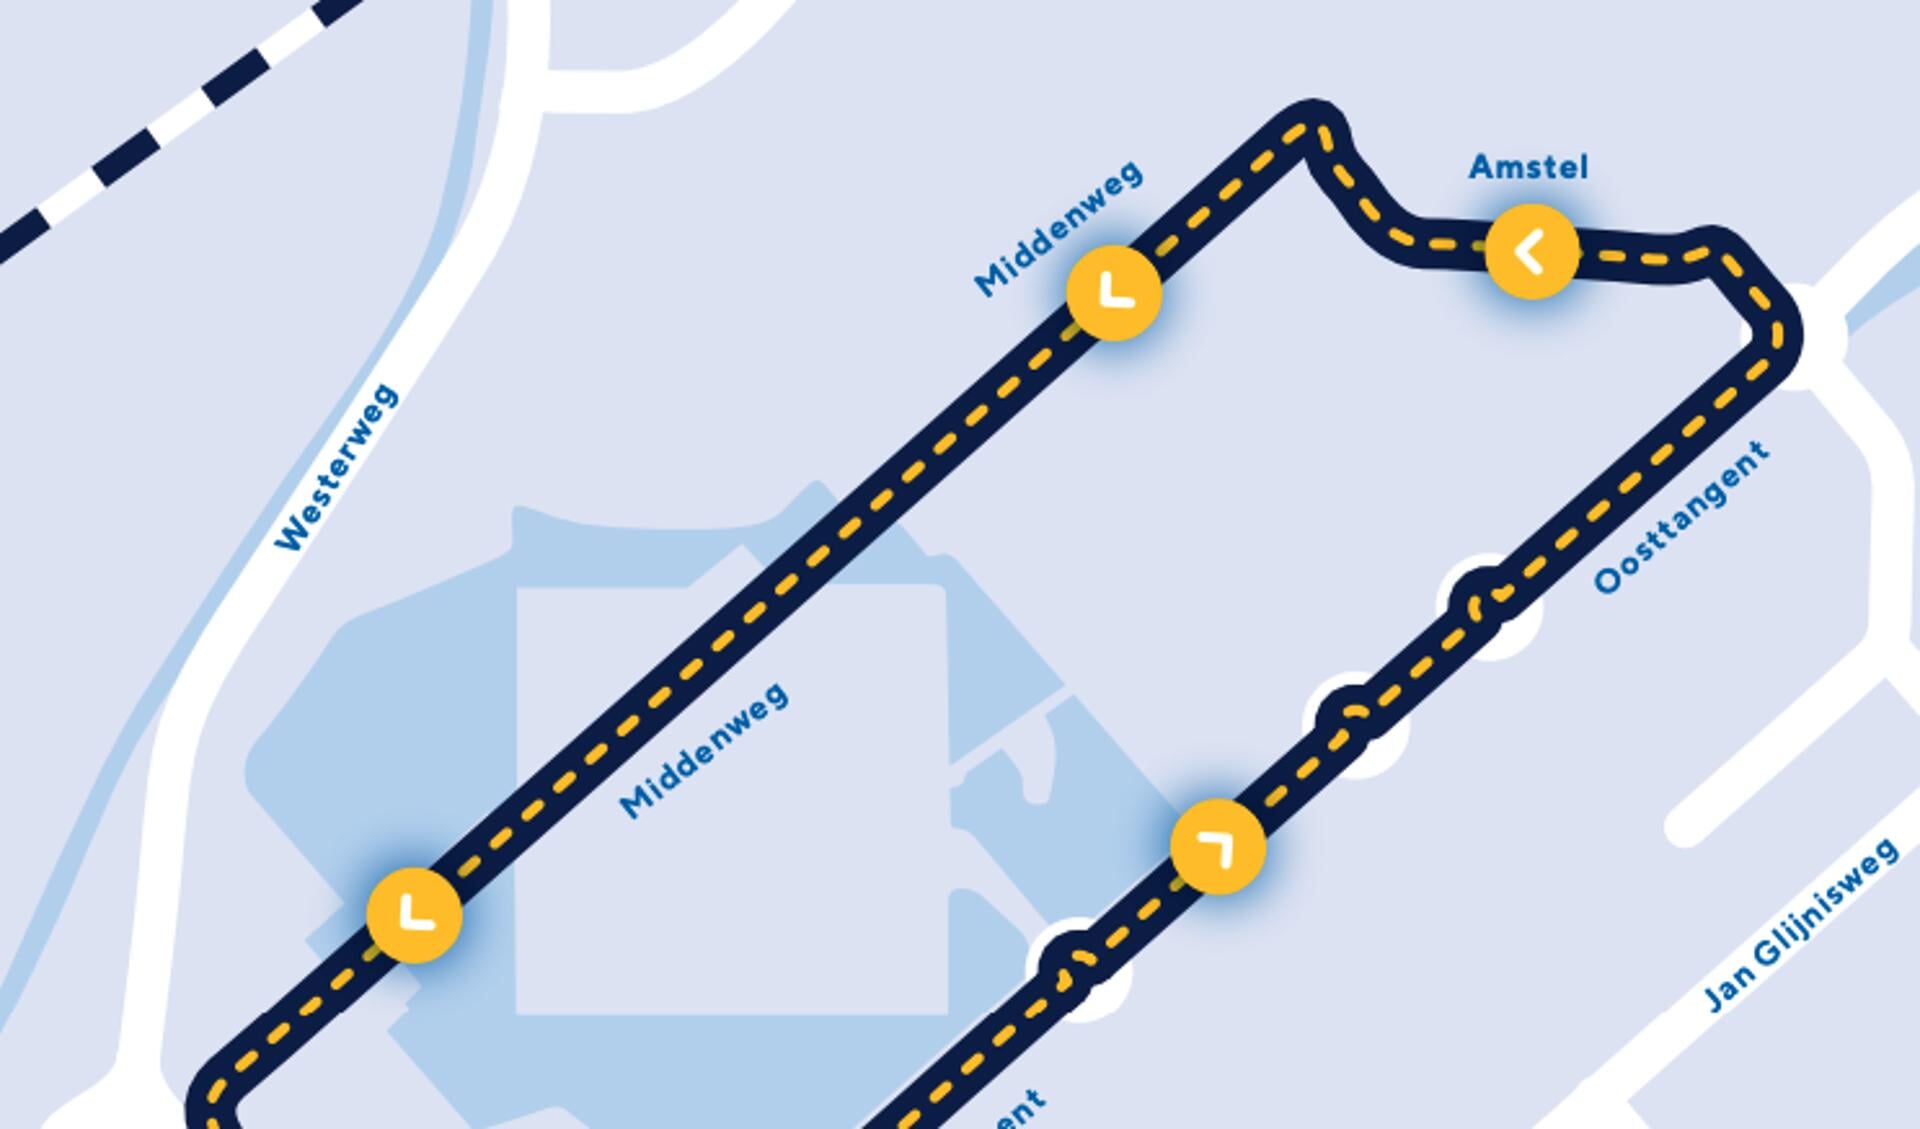 De route door Heerhugowaard die de renners zondag 11 augustus afleggen.